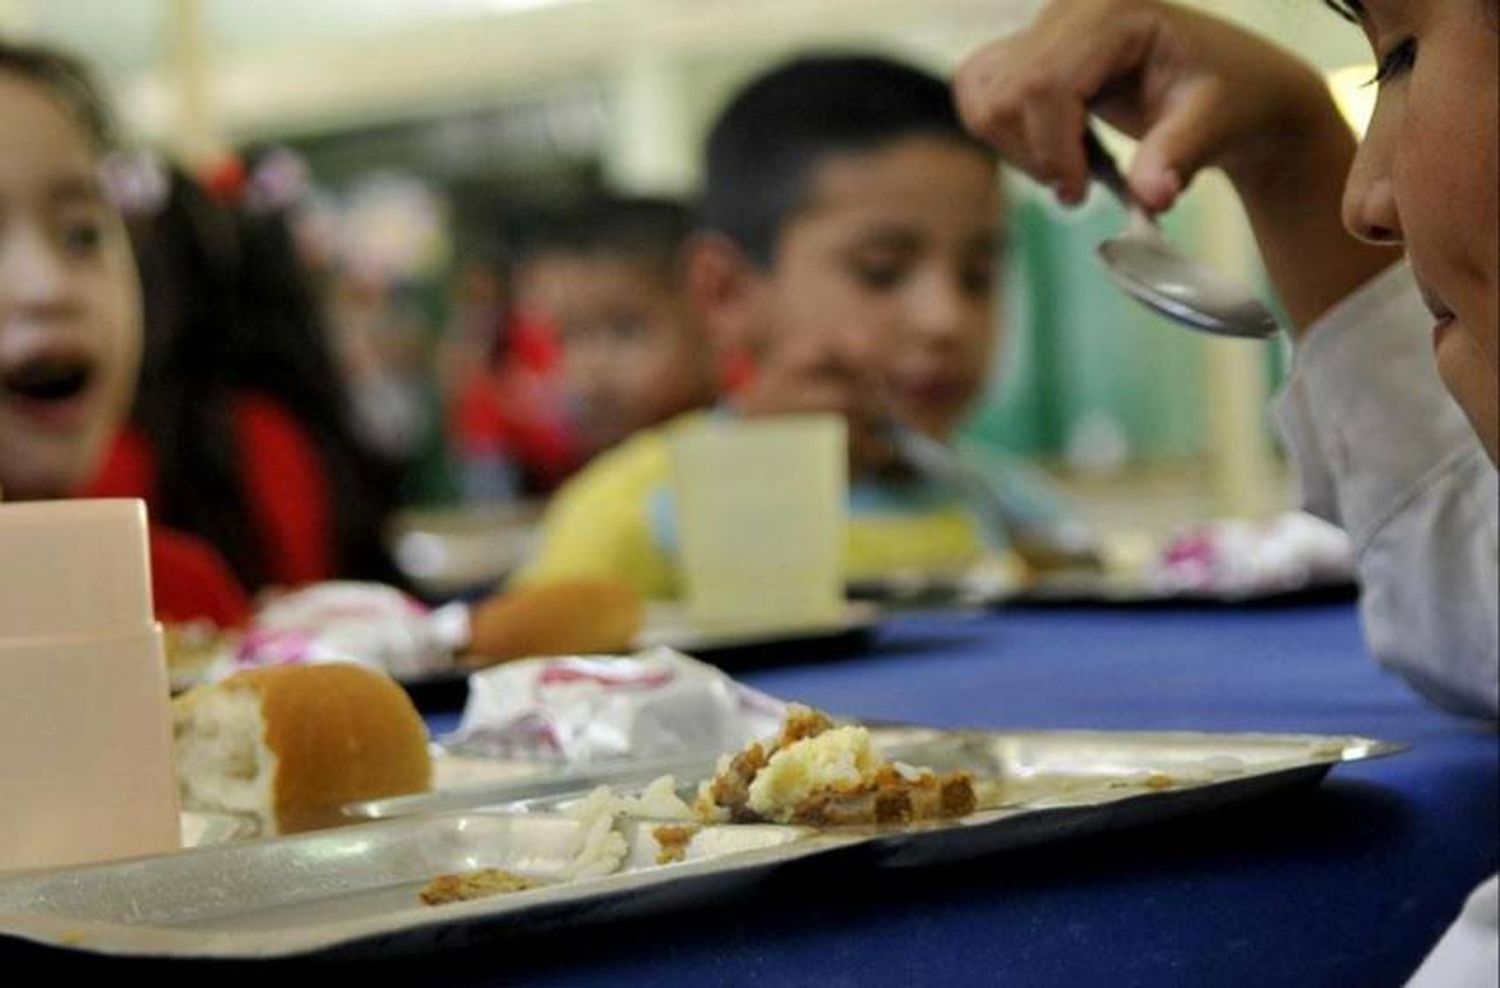 Servicio alimentario en escuelas: habrá otra licitación en dos meses